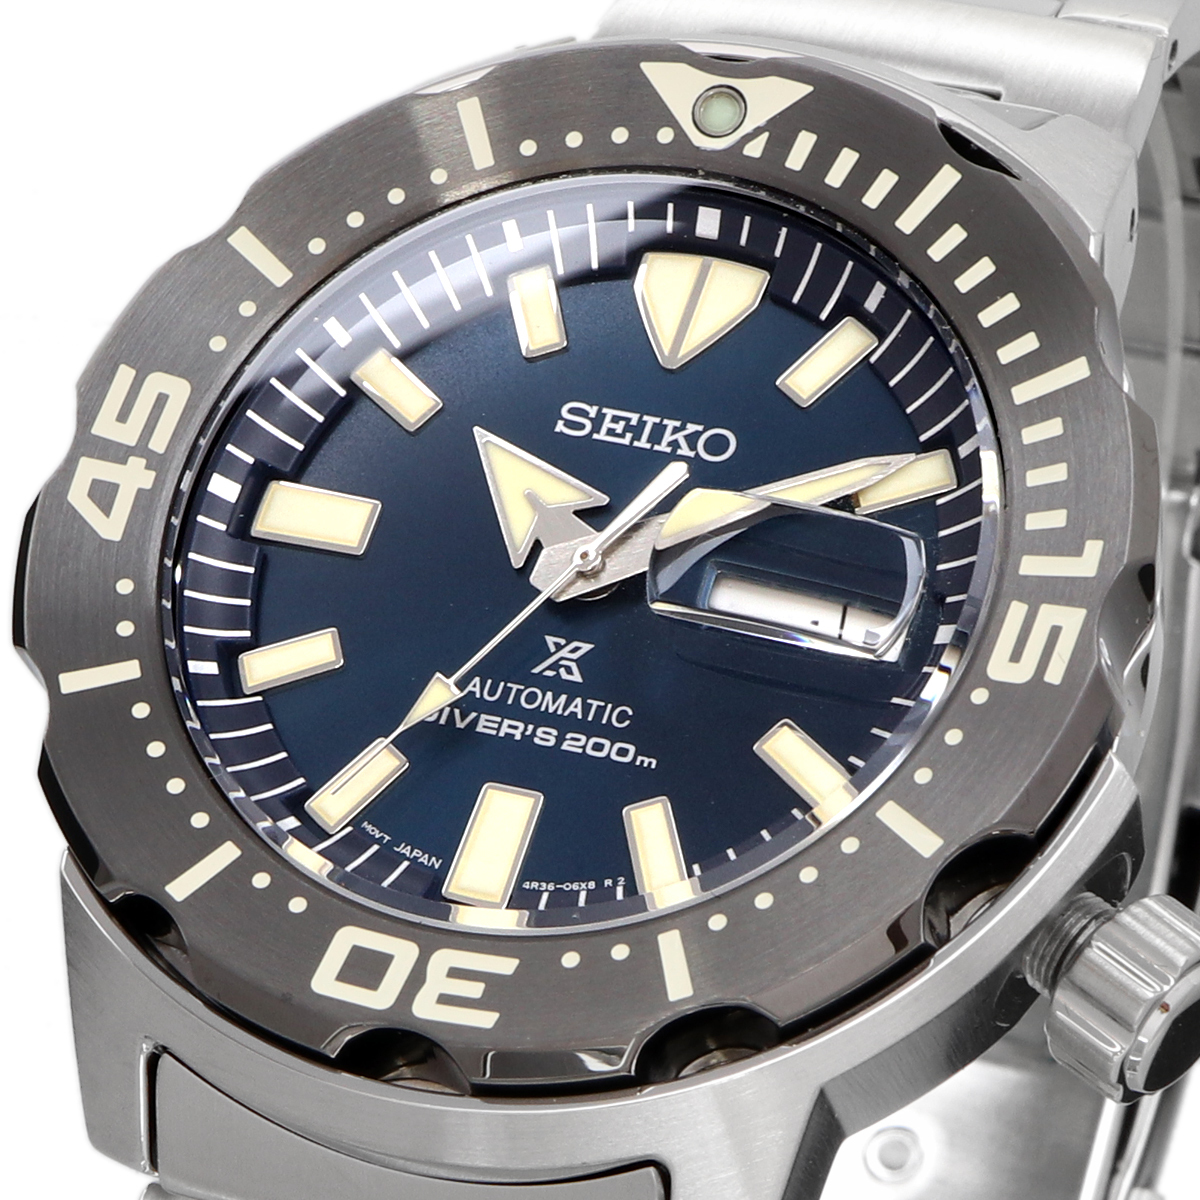 34％割引注目ブランド 送料無料 新品 腕時計 SEIKO セイコー 海外モデル PROSPEX プロスペックス 自動巻き ダイバーズ メンズ  SRPD25 セイコー ブランド腕時計 アクセサリー、時計-FALCONMX.COM